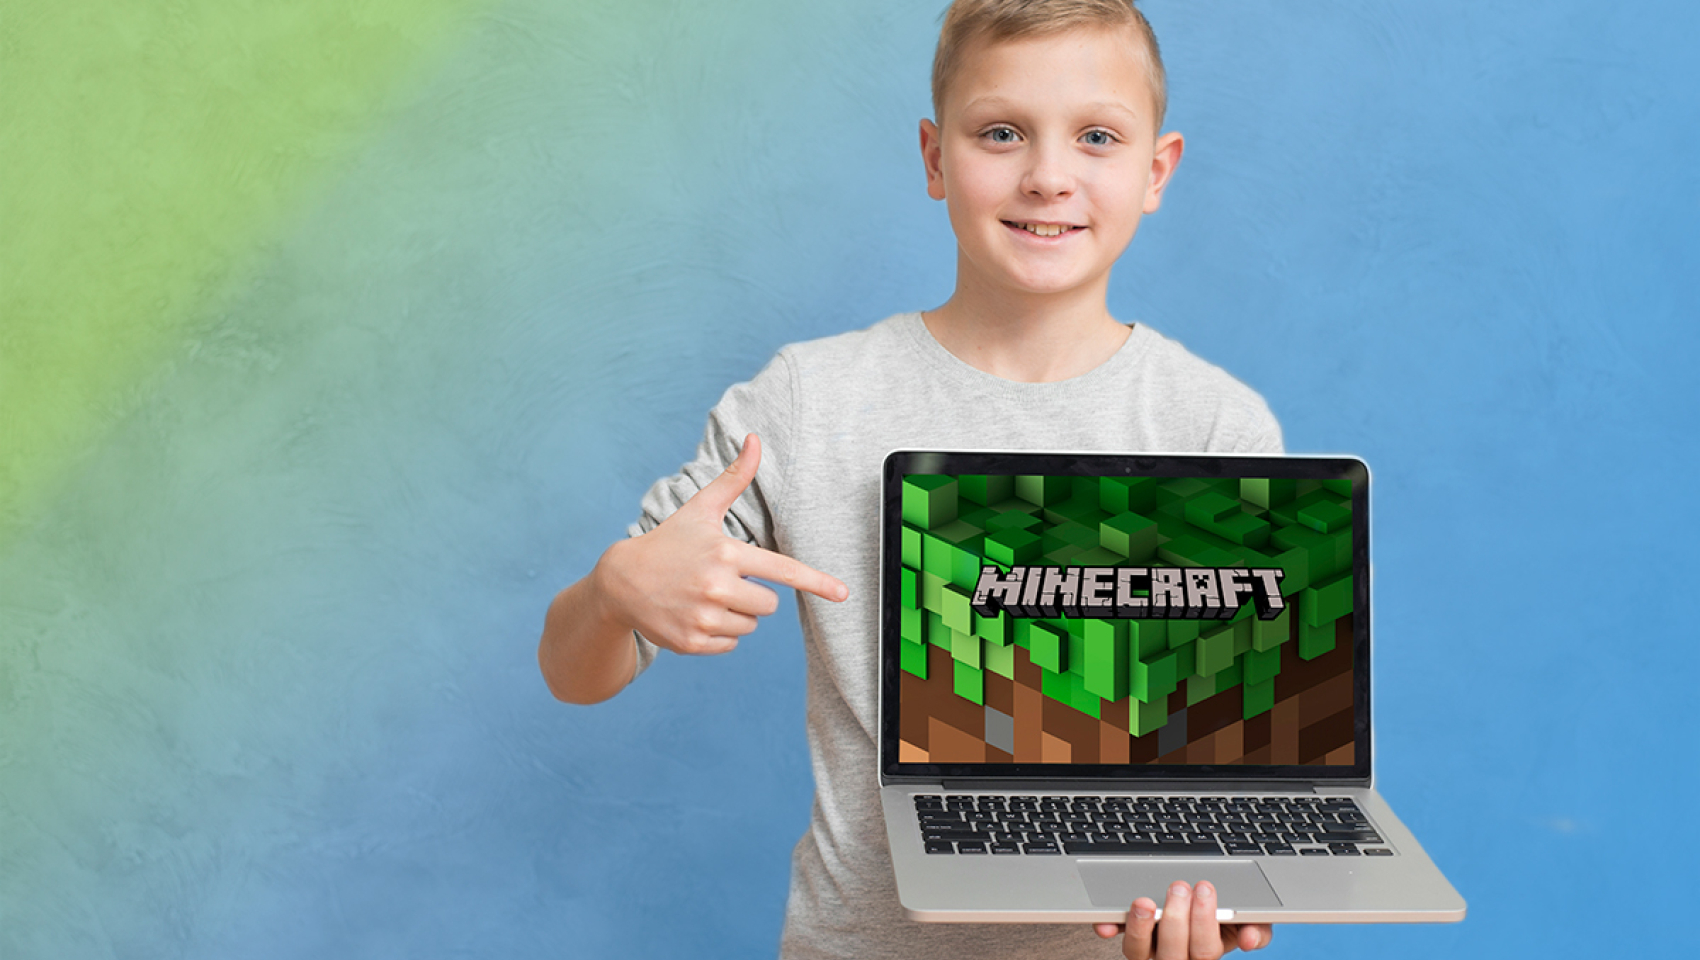 Открытый урок «Как научить ребёнка программированию с помощью Minecraft?» 24 февраля в Киеве